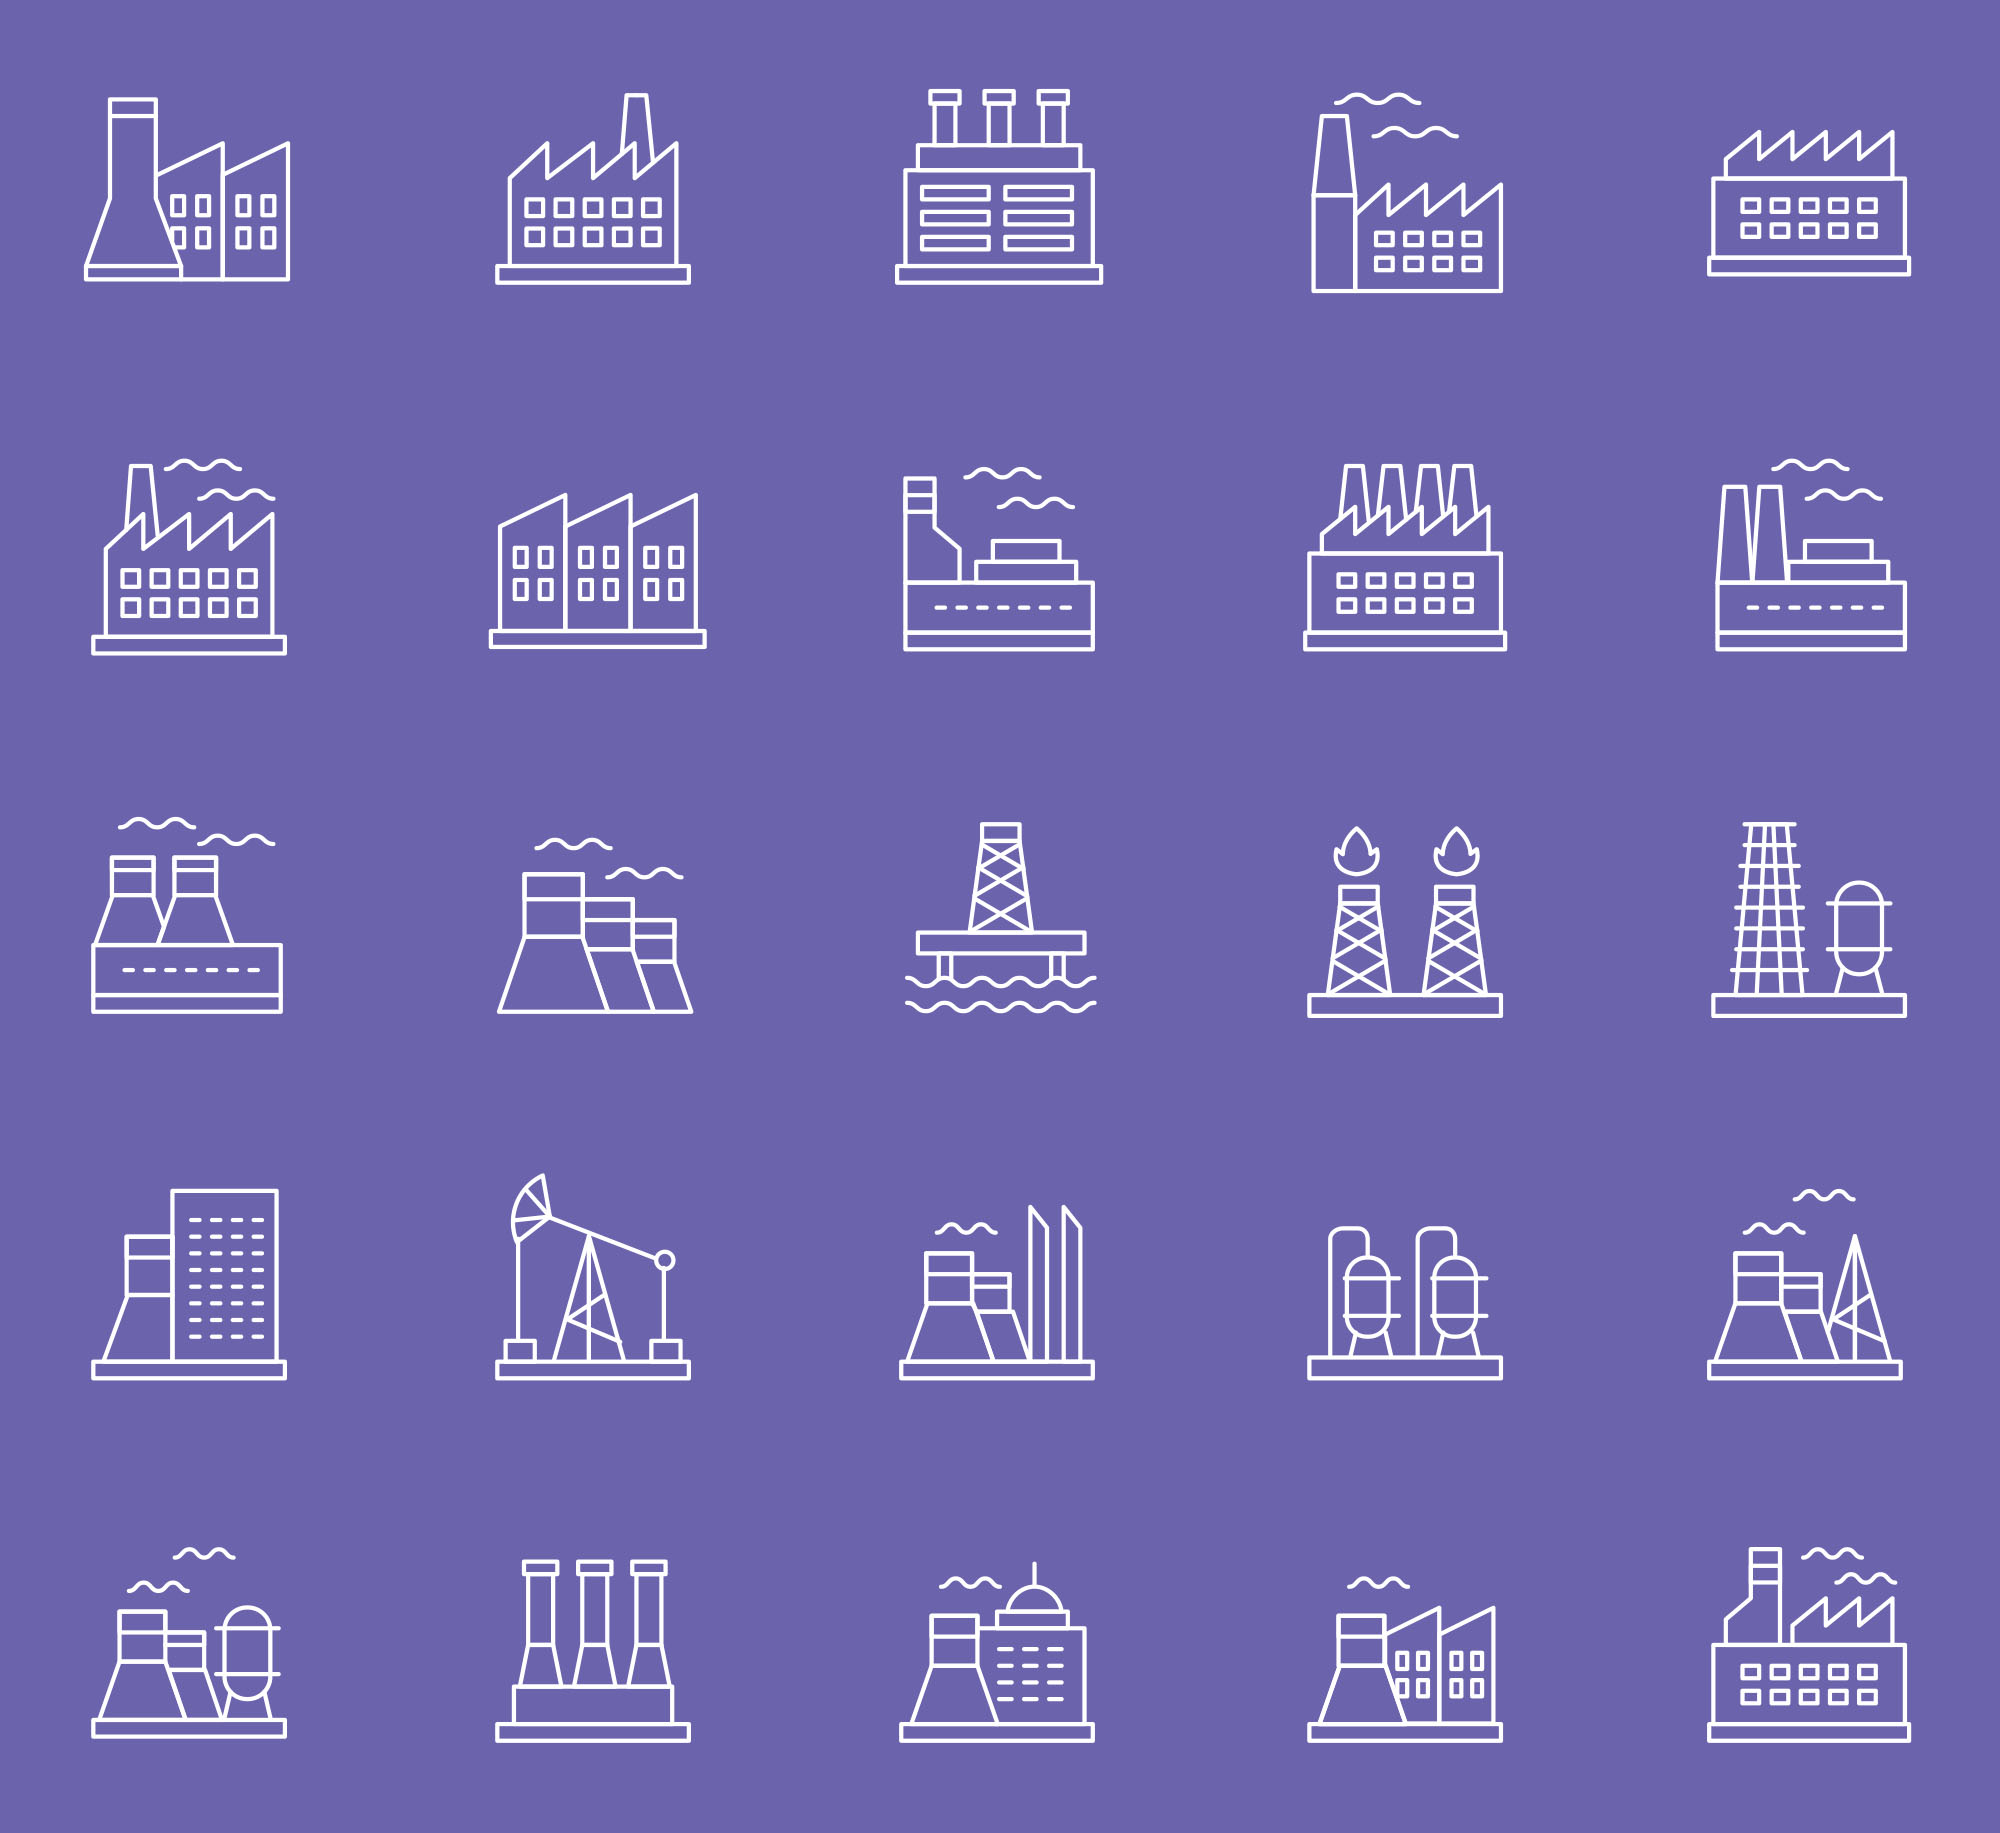 25枚建筑线性图标设计素材 25 Free Industry Icons插图(2)